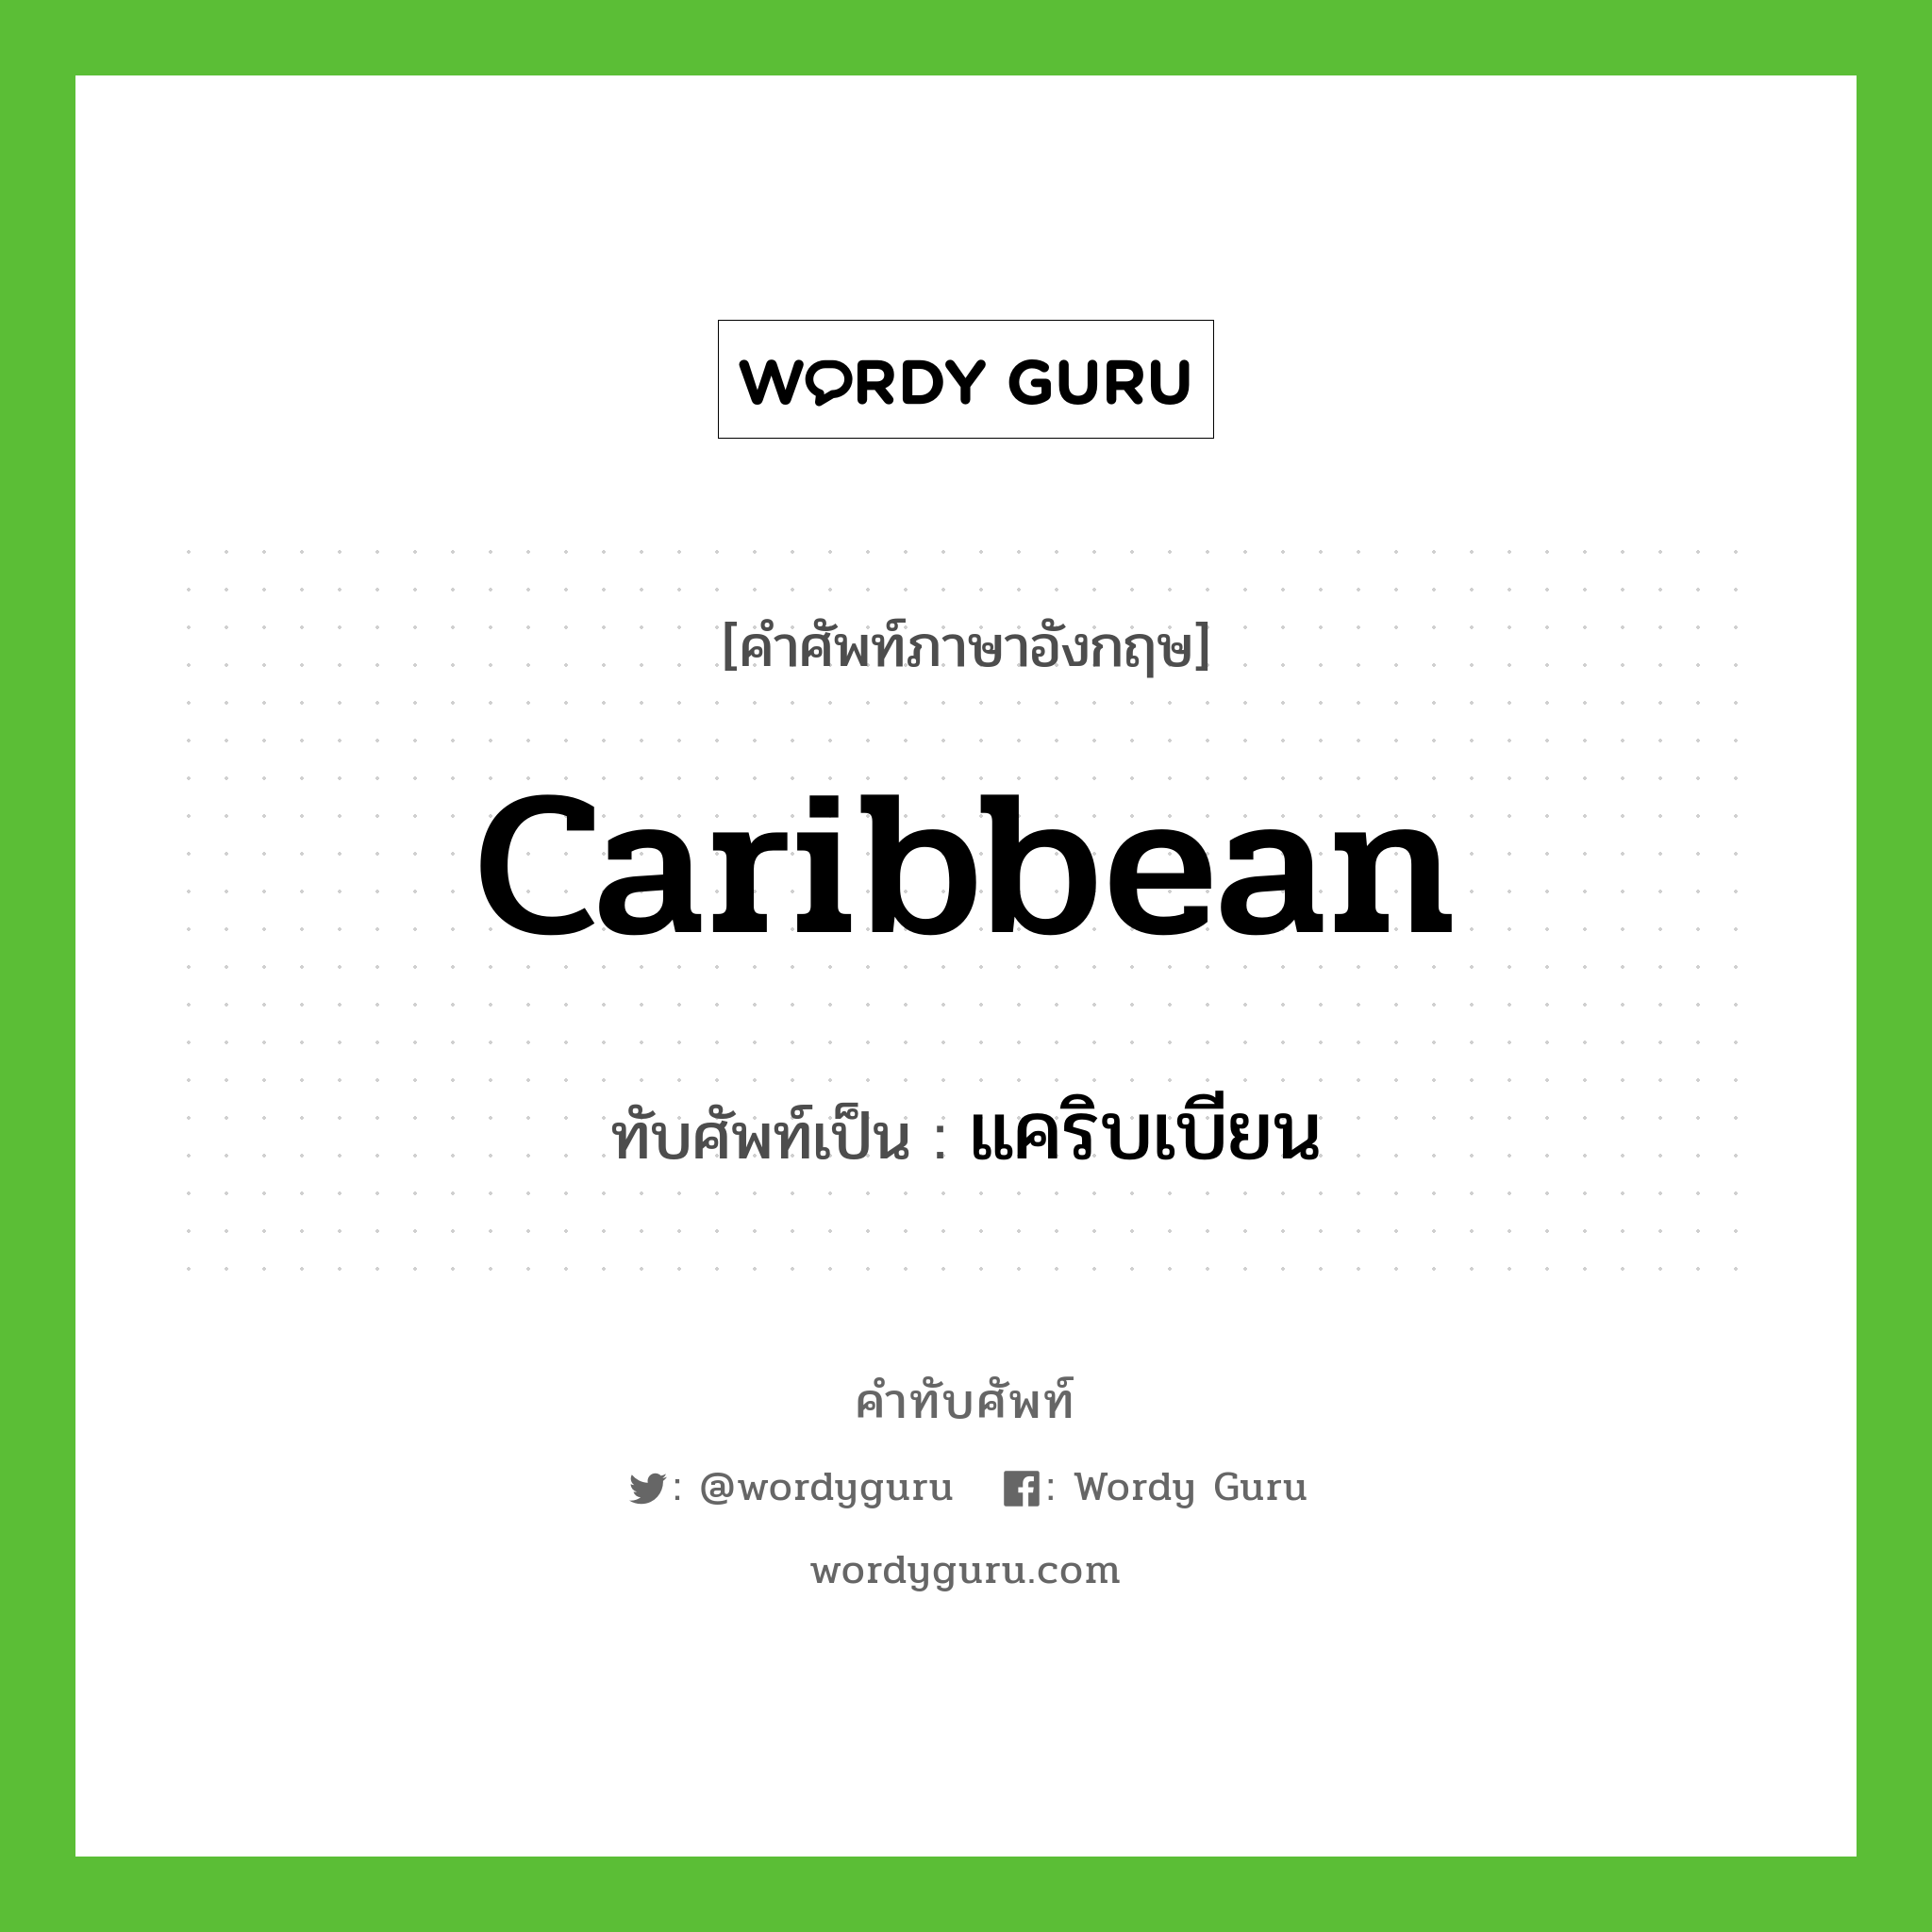 Caribbean เขียนเป็นคำไทยว่าอะไร?, คำศัพท์ภาษาอังกฤษ Caribbean ทับศัพท์เป็น แคริบเบียน